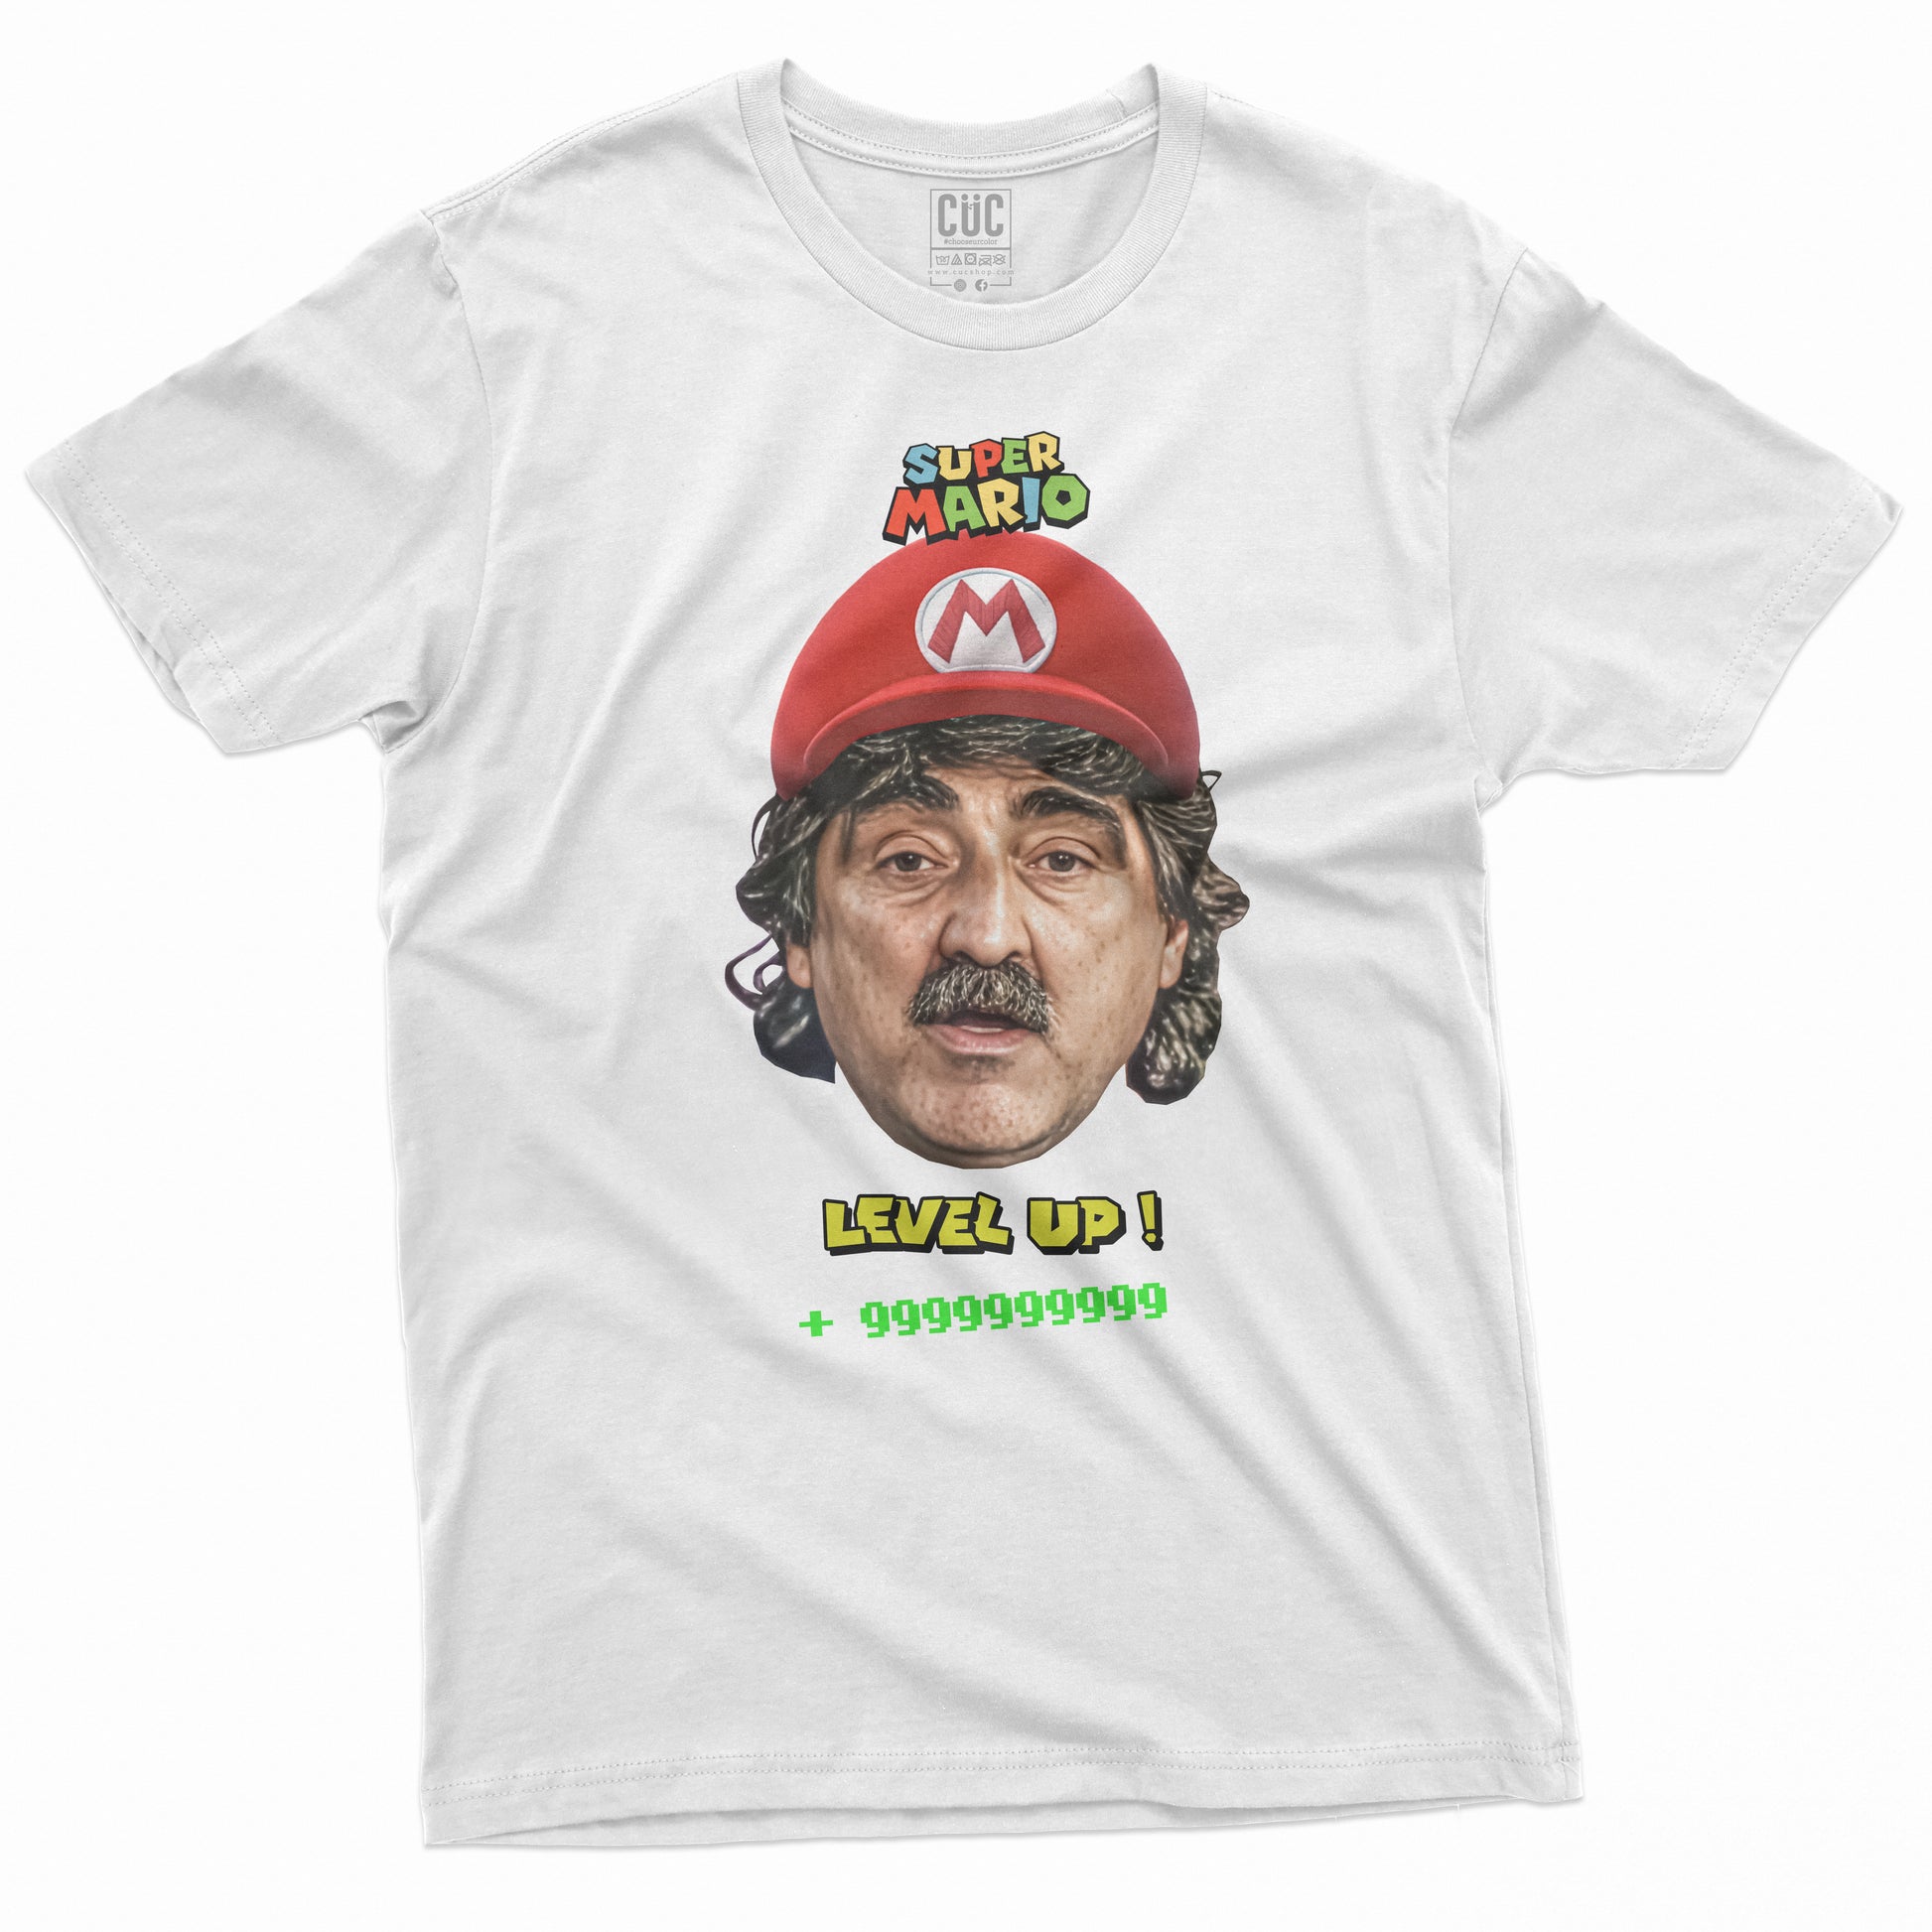 CUC T-Shirt BAFFO - Super Mario - Da Crema - Level Up  #chooseurcolor - CUC chooseurcolor